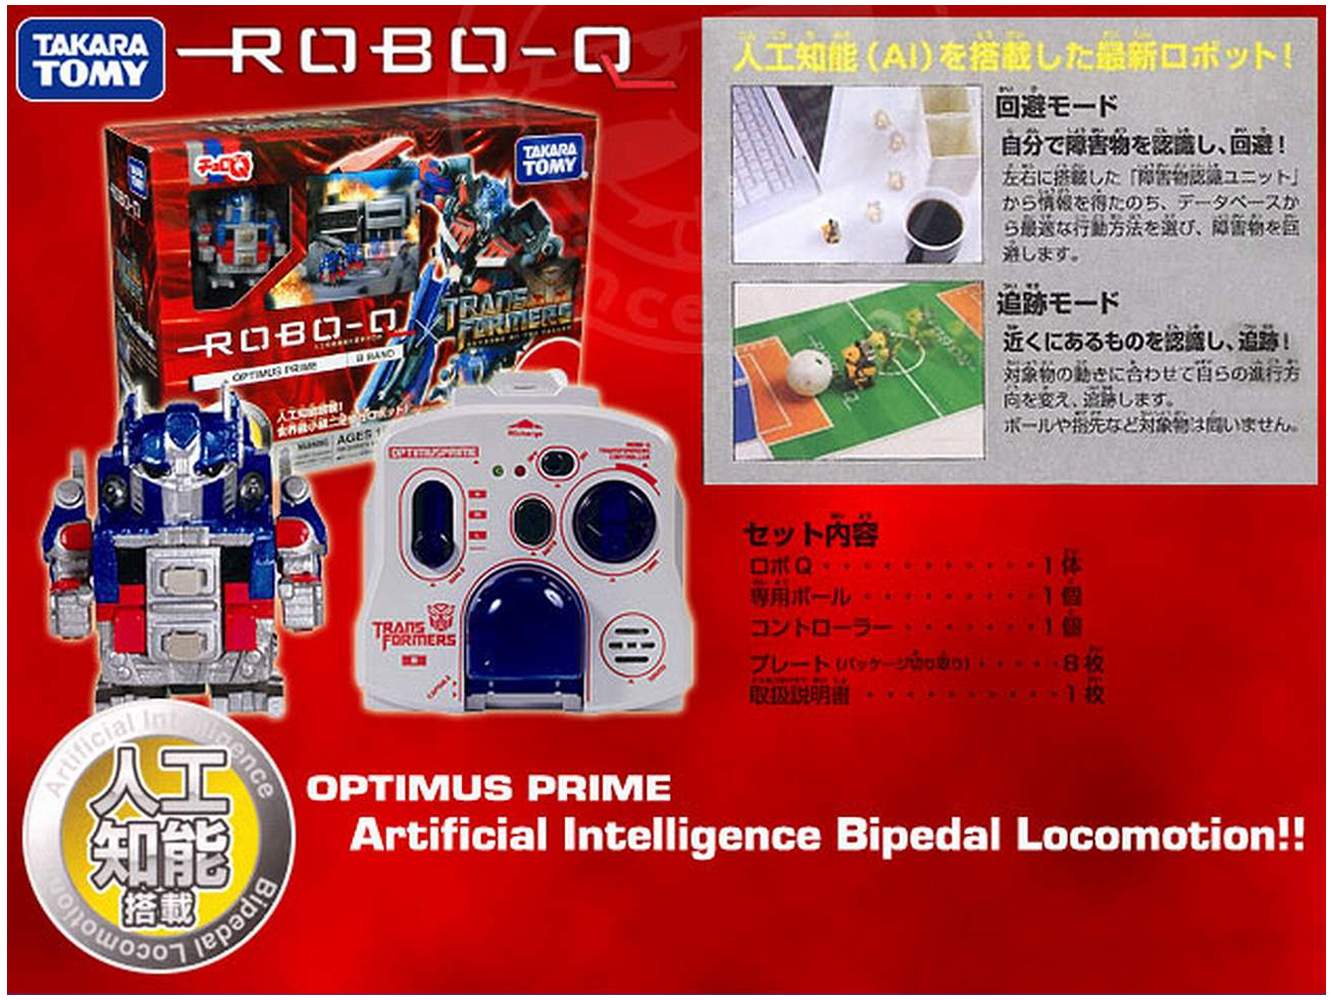 Robo-Q Robot